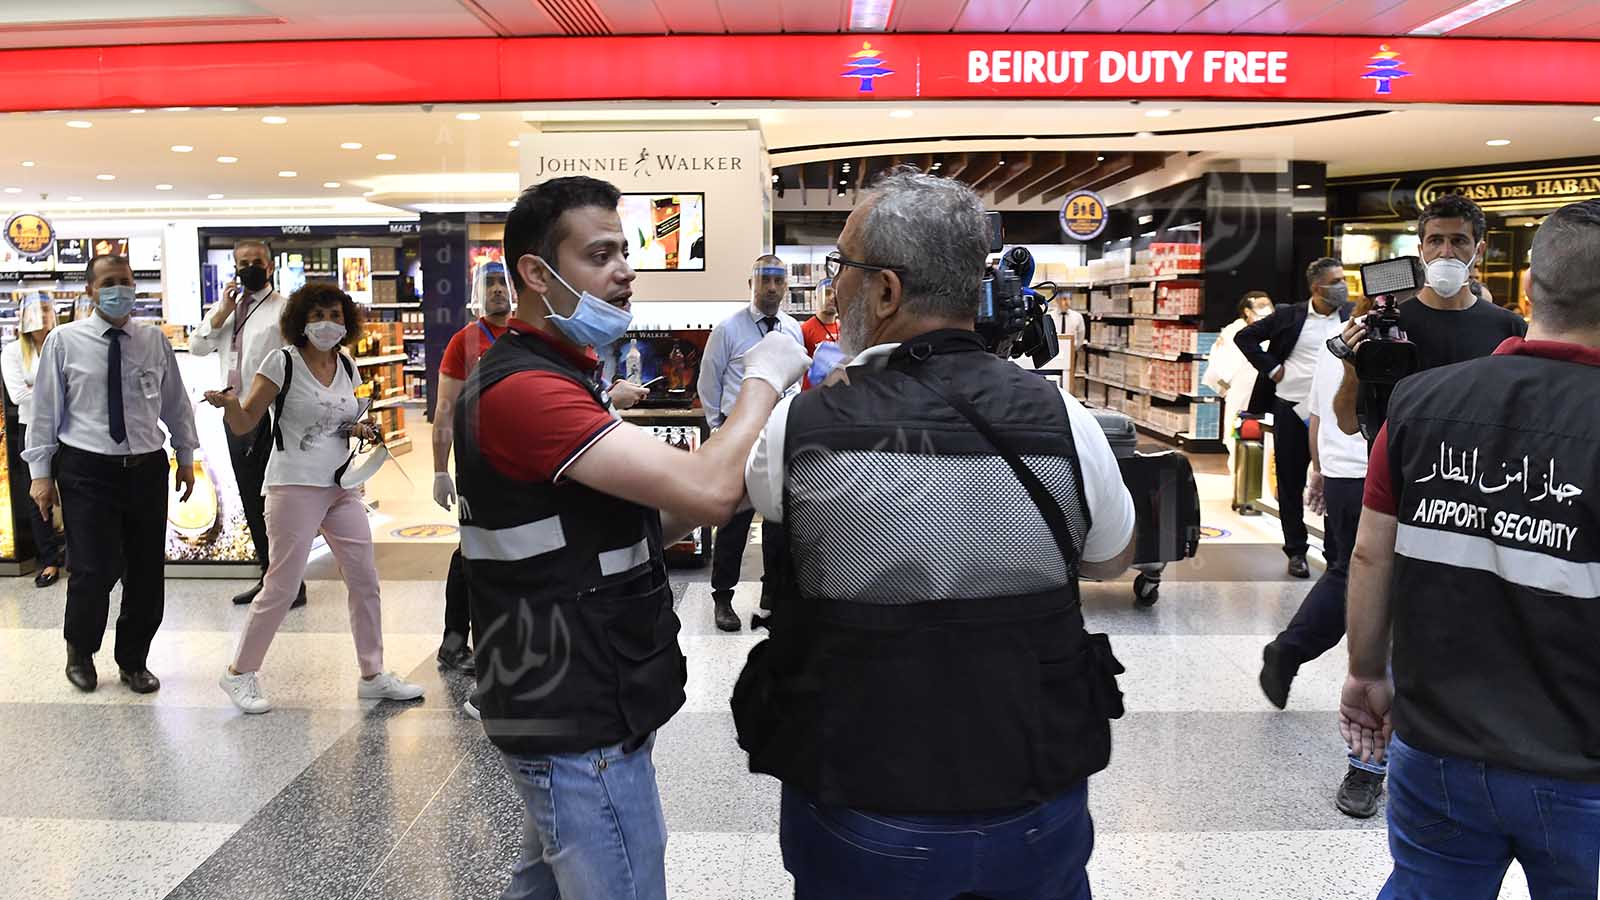 مطار بيروت يستعيد نشاطه باعتداء على الصحافيين: صوّروا الوزير!